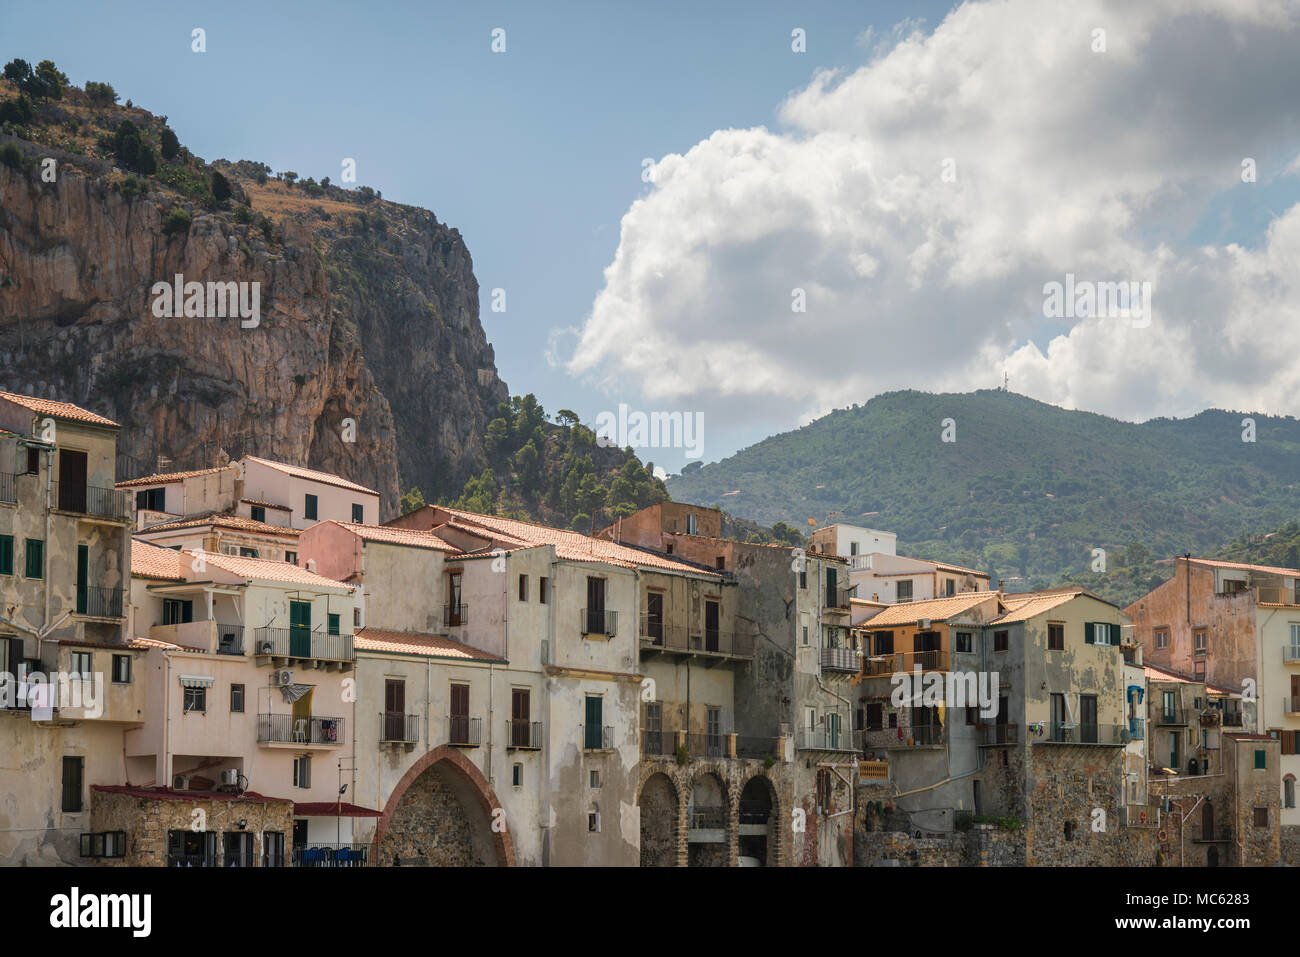 Les bâtiments historiques à Cefalu, Sicile, Italie, avec les collines rocheuses en arrière-plan. Banque D'Images